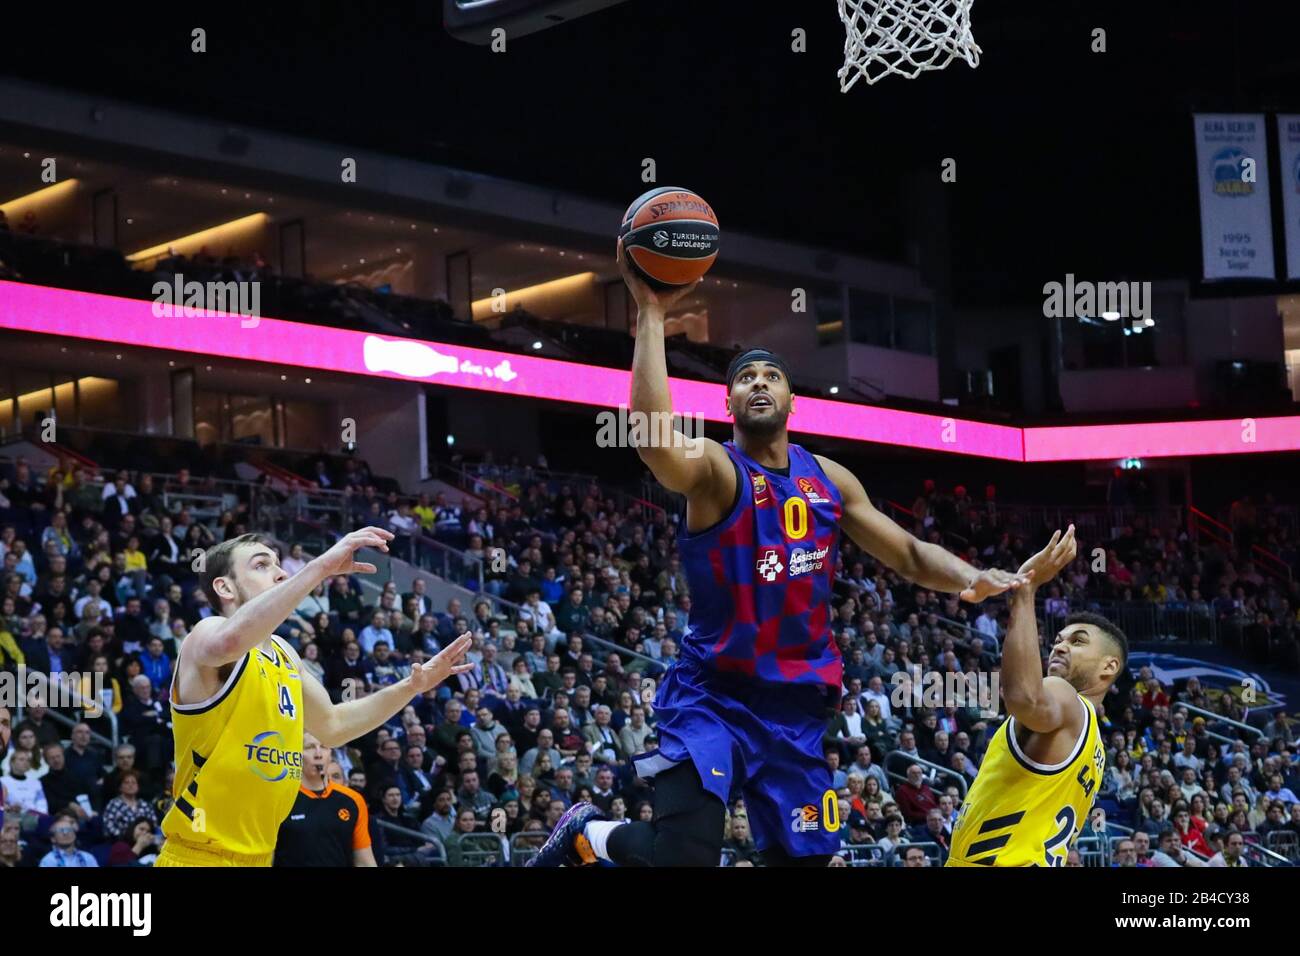 Berlin, Allemagne, le 04 mars 2020: Le joueur de basket-ball Brandon Davies du FC Barcelone est en action pendant le match de l'Euroligue Banque D'Images